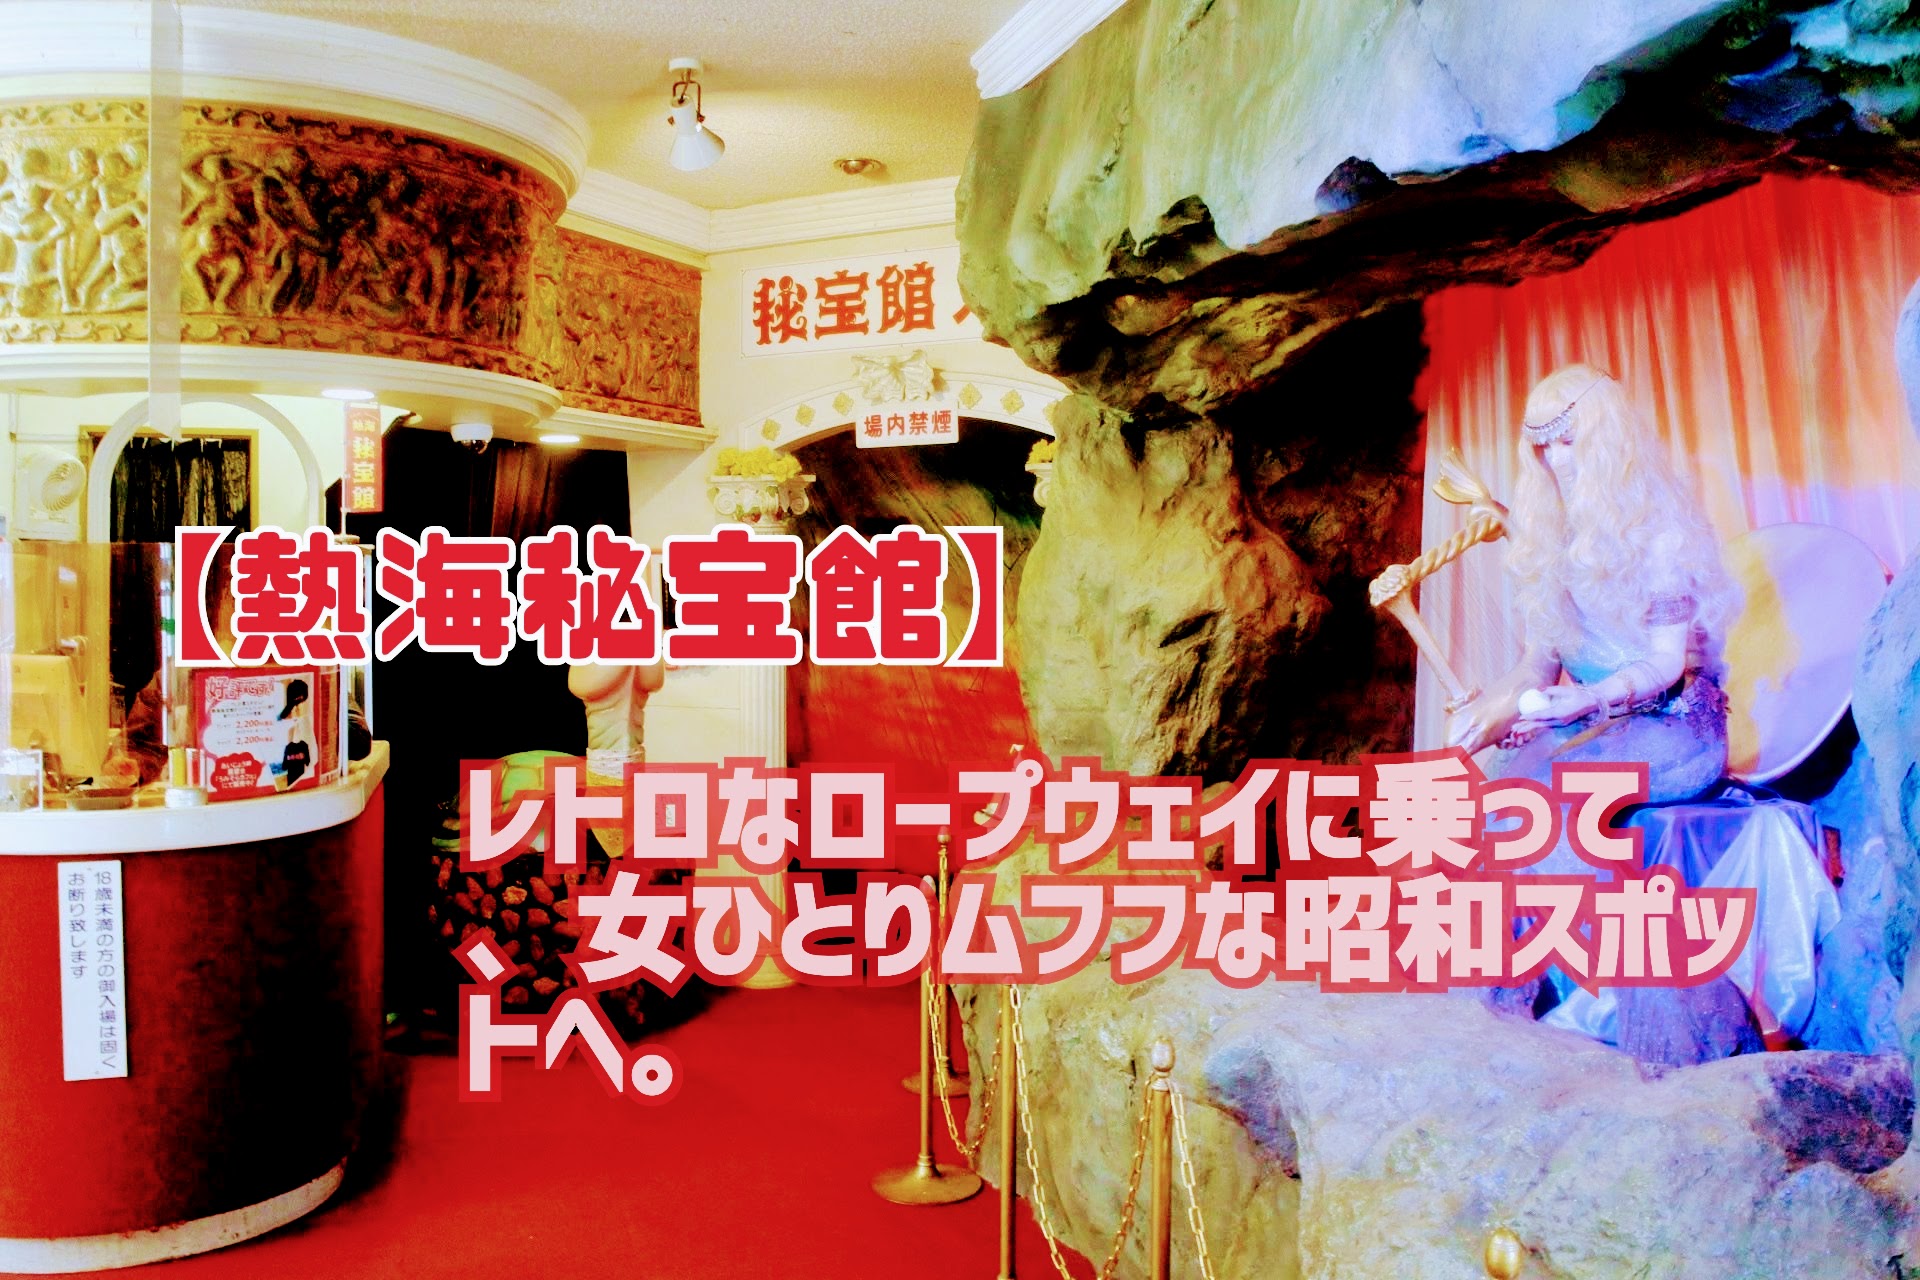 【熱海秘宝館】レトロなロープウェイに乗って、女ひとりムフフな昭和スポットへ。